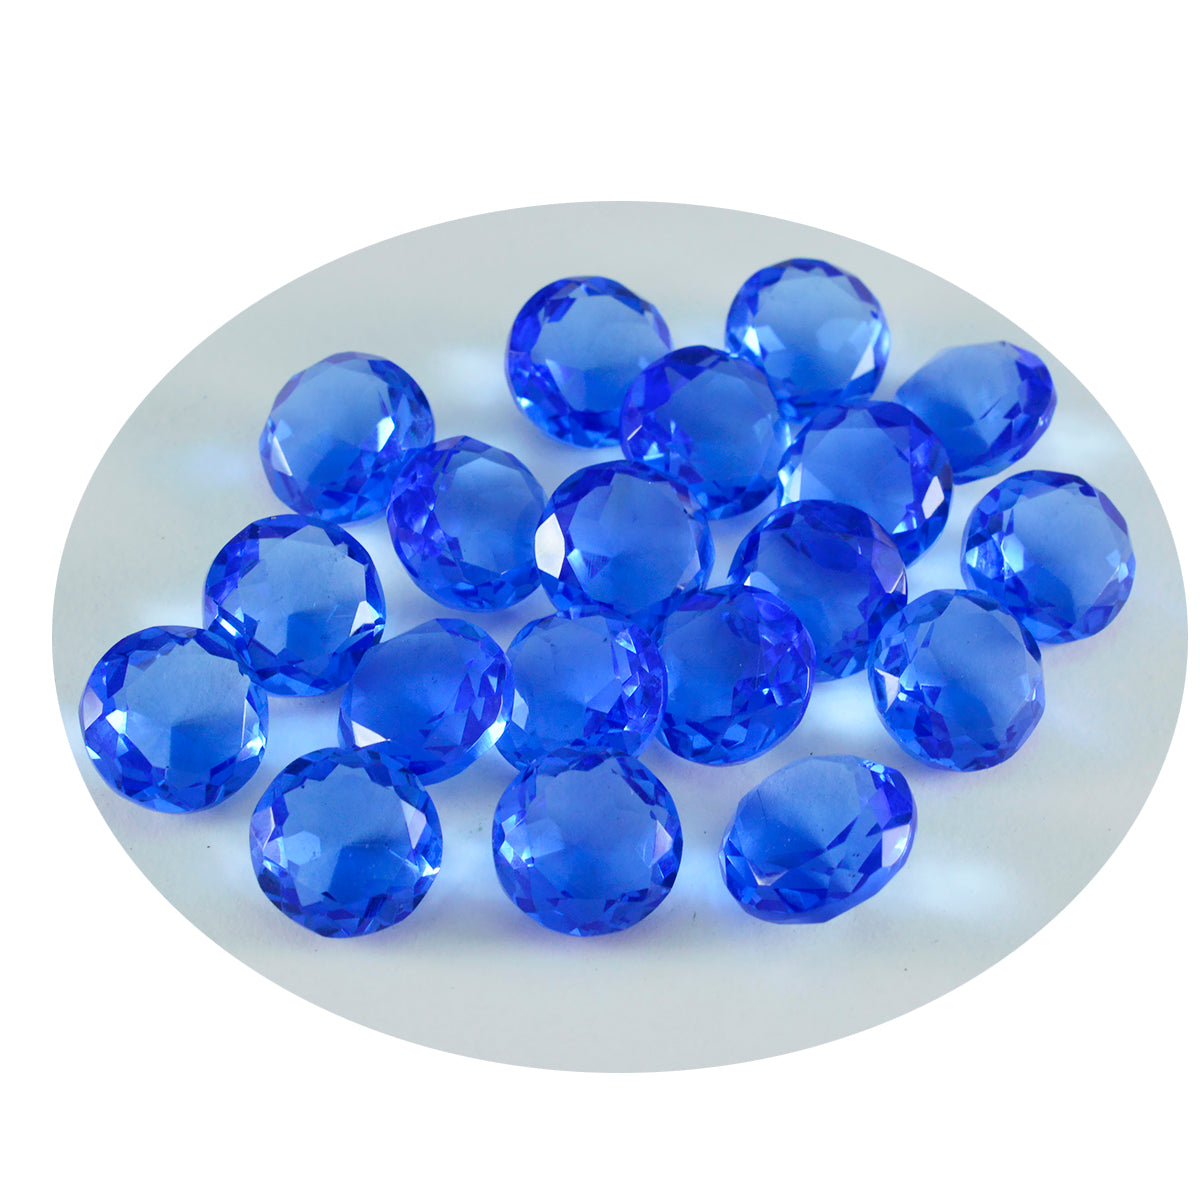 riyogems 1 шт. синий сапфир cz ограненный 6x6 мм драгоценный камень круглой формы, качественный драгоценный камень